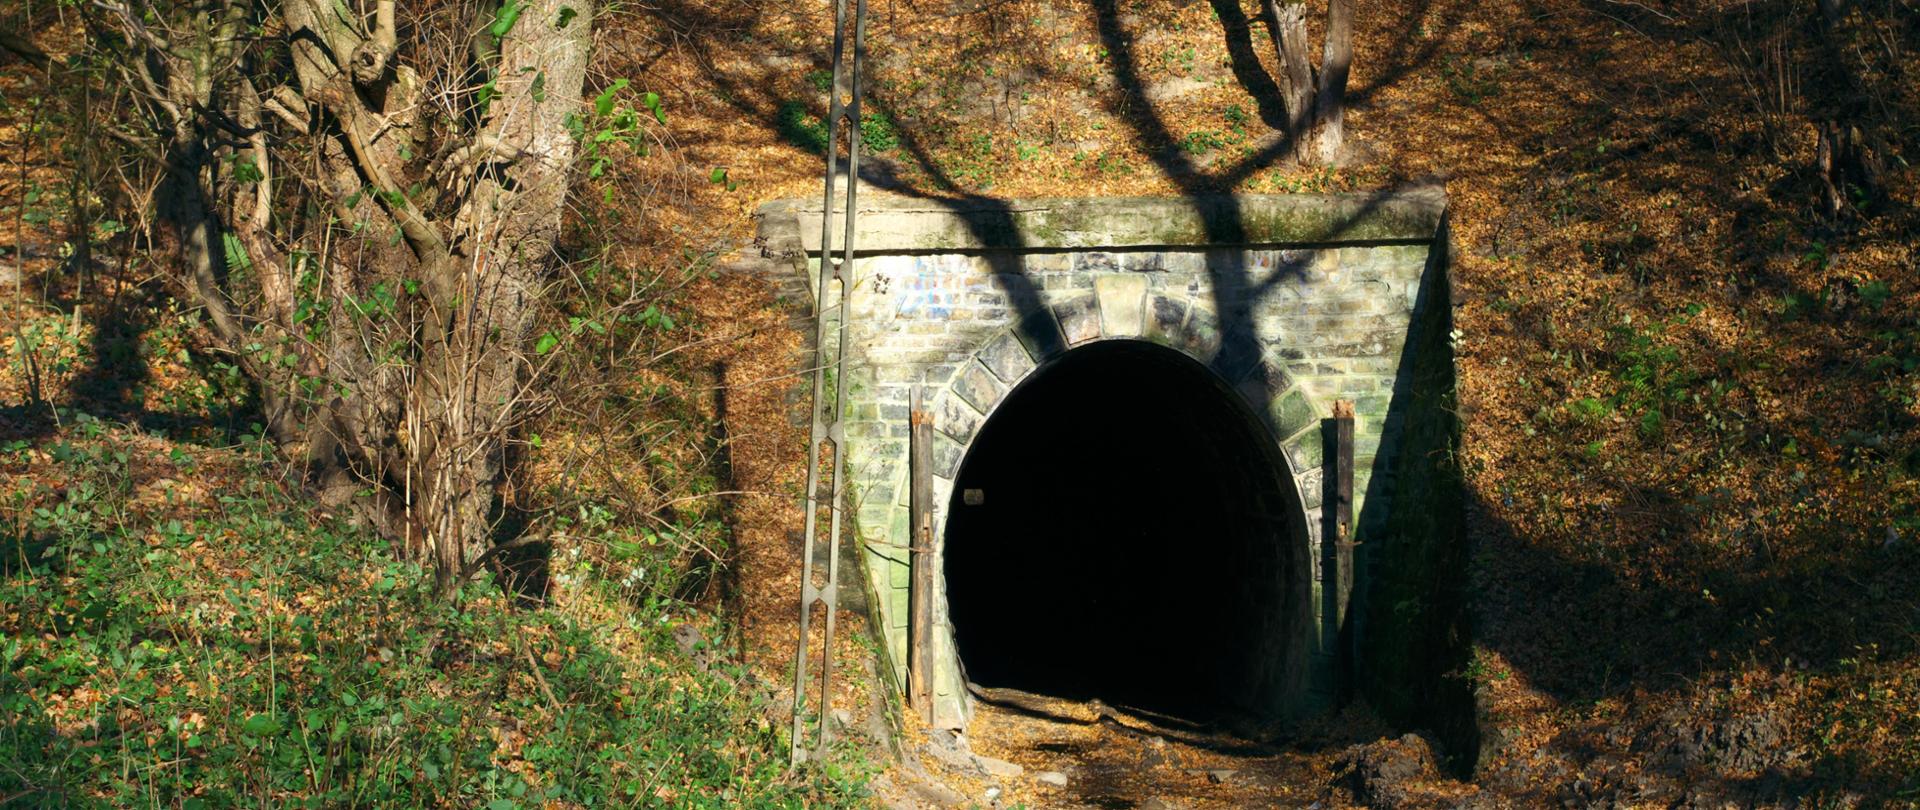 Tunel w Szklarach